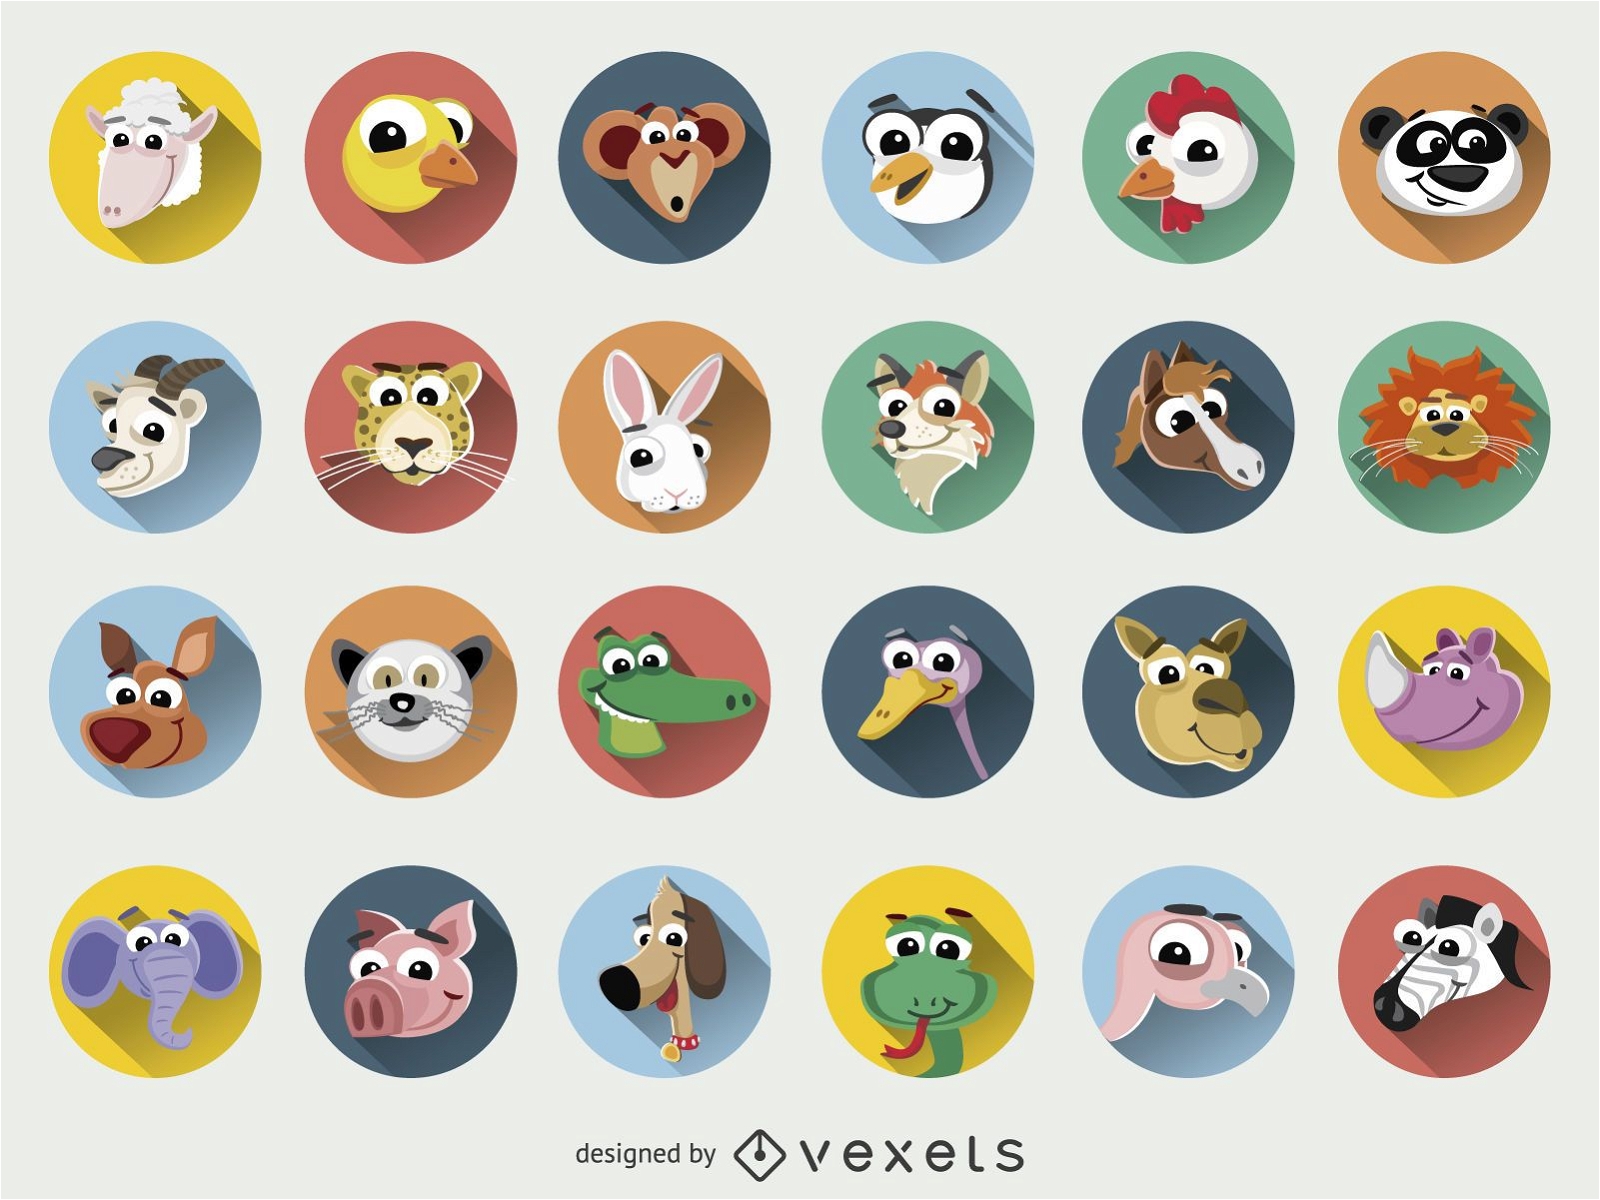 Descarga Vector De Conjunto De Iconos De Caras De Dibujos Animados De  Animales Divertidos